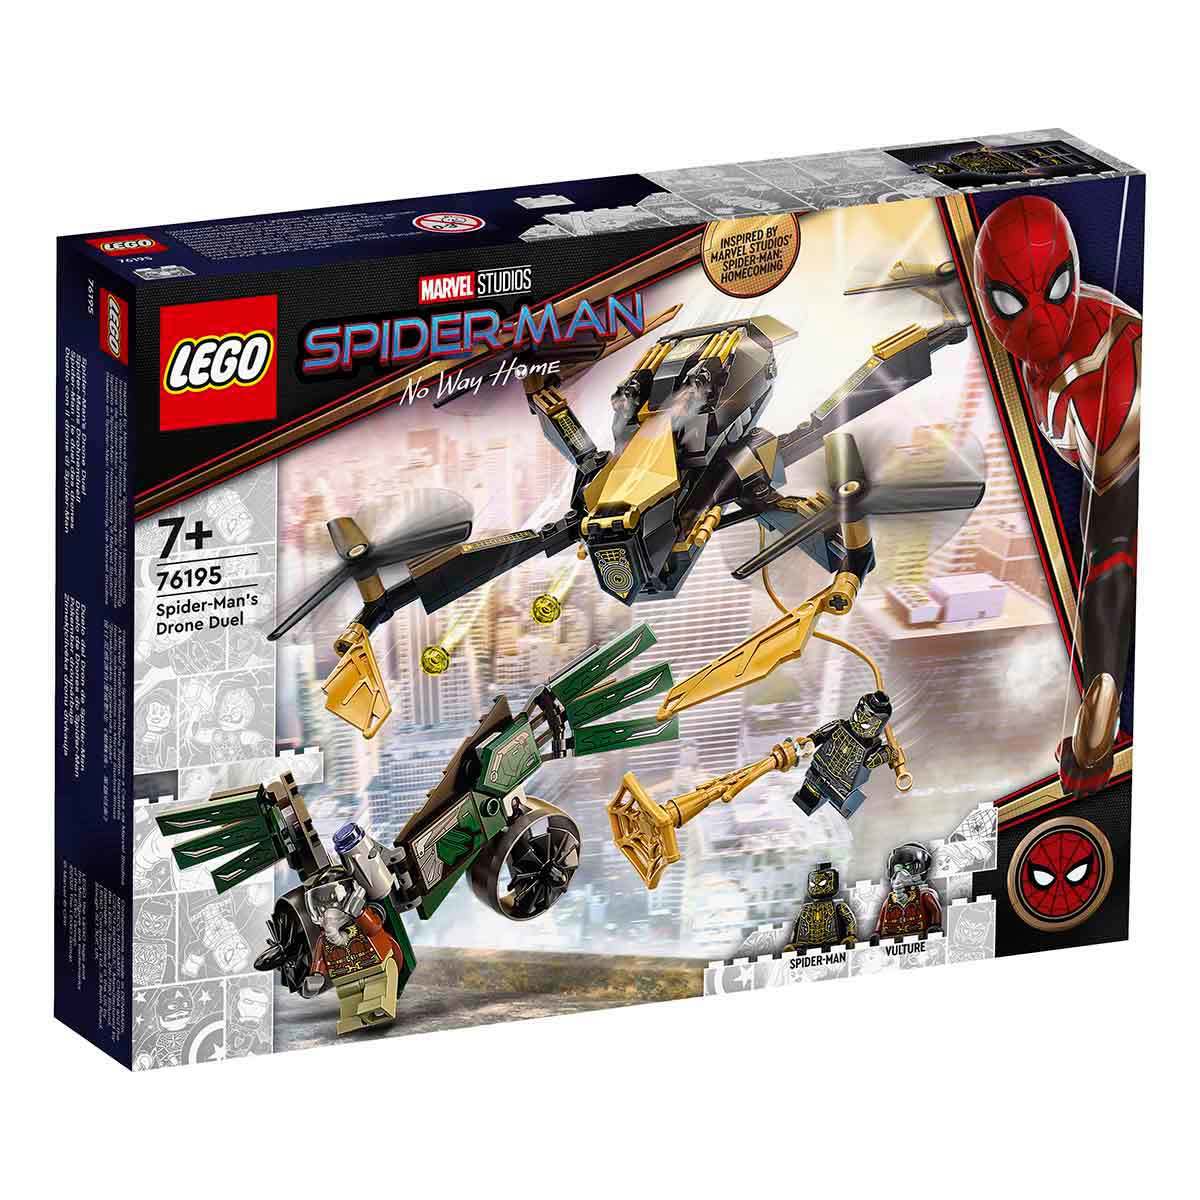 LEGO MARVEL SUPER HEROES ÖRÜMCEK ADAM'IN DRON DÜELLO 76195